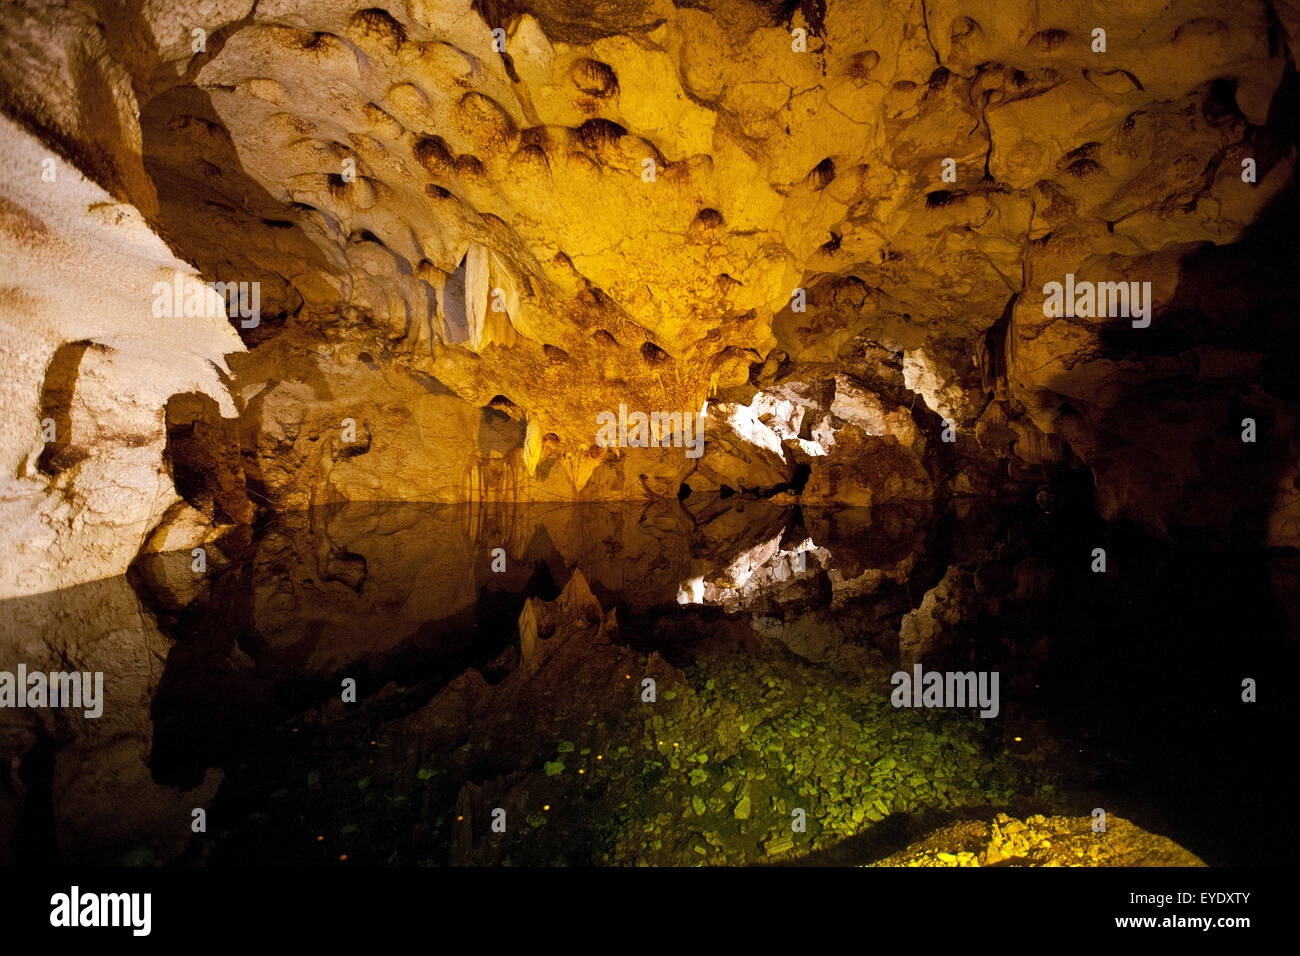 Lago subterráneo en el vientre de la cueva, Green Grotto Caves, Discovery Bay, Saint Ann, Jamaica Foto de stock